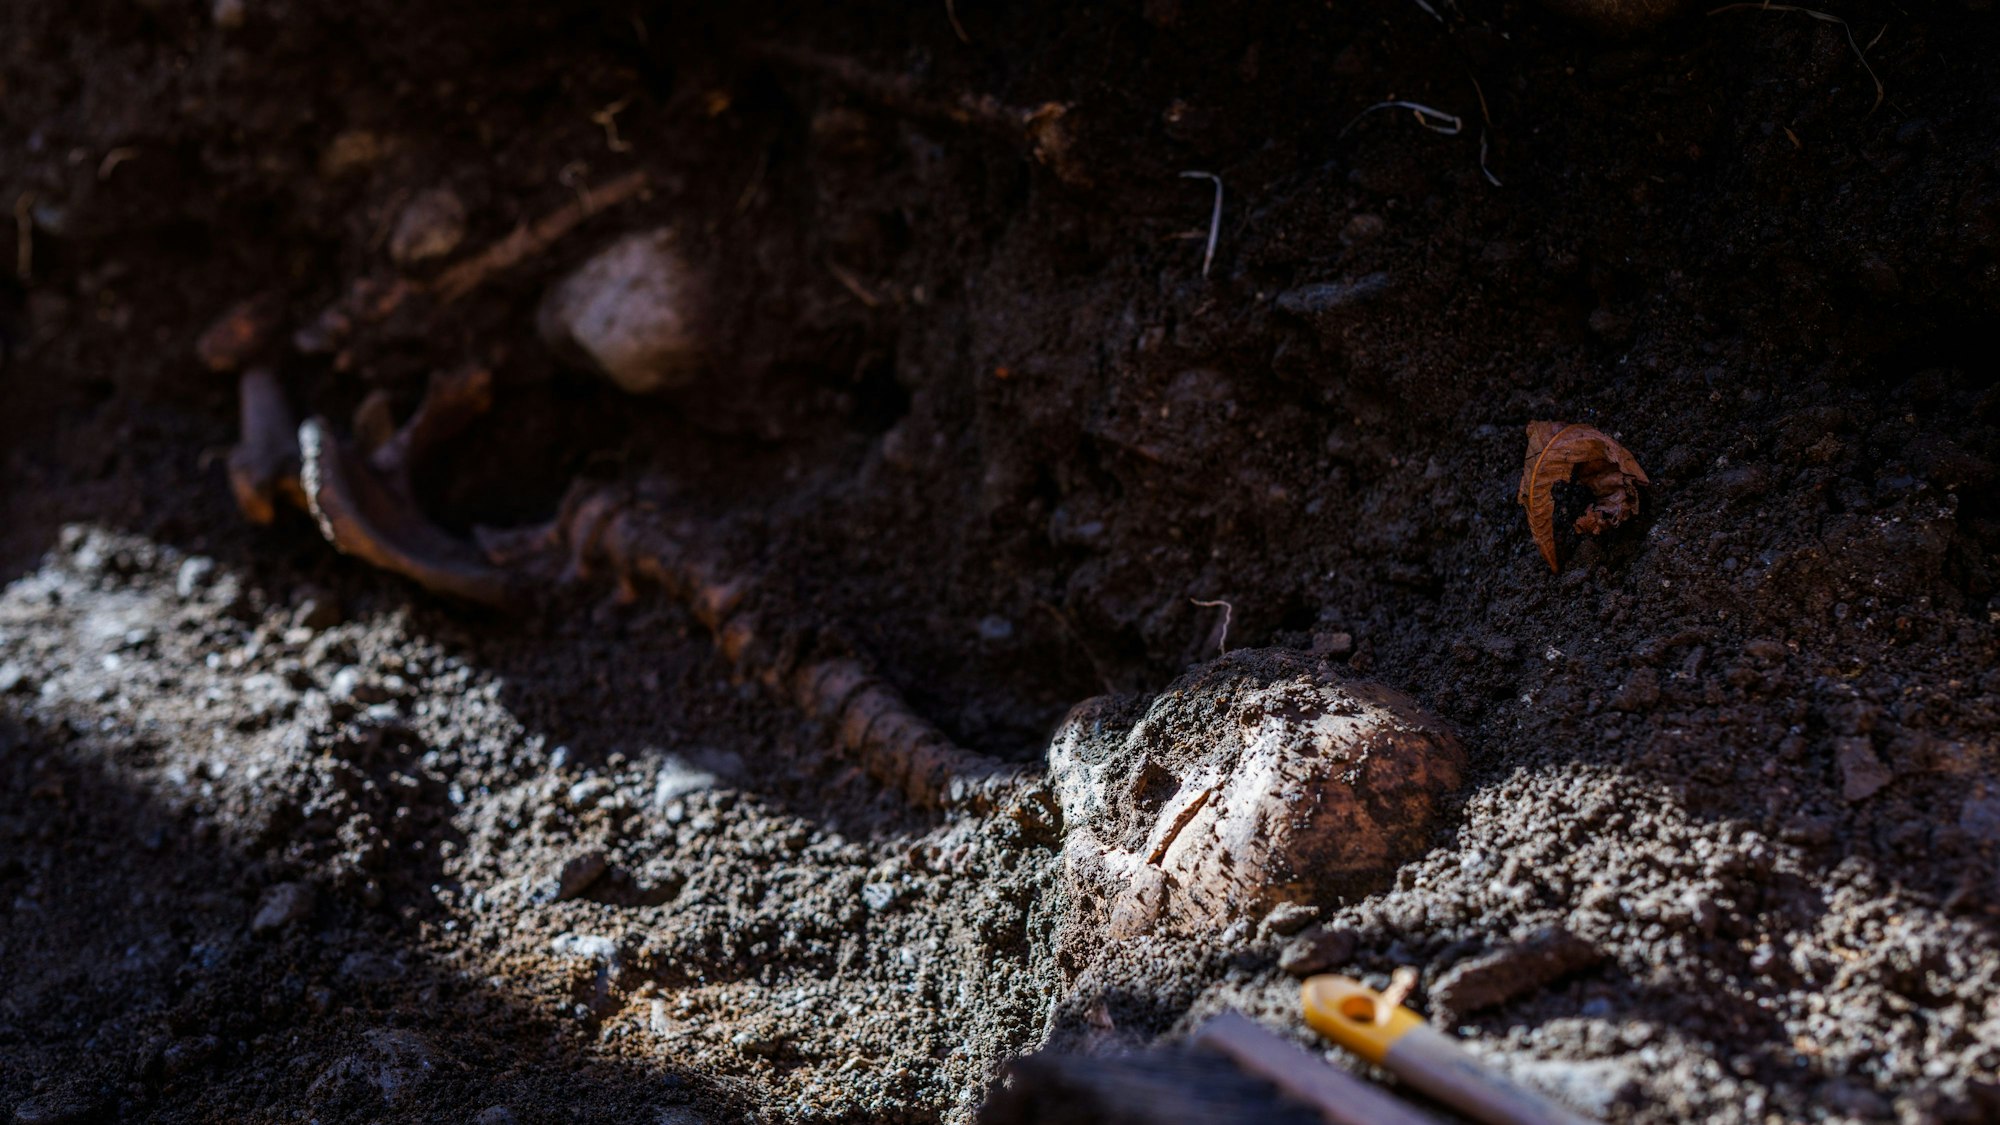 In Freiburg kam es zu ersten Erkenntnissen bei einem gruseligen Fund, der hochinteressante historische Einblicke verspricht. Auf dem Foto (aufgenommen am 8. November 2021 in Freiburg) sieht man menschliche Überreste, teilweise noch vergraben, auf dem Boden liegen.